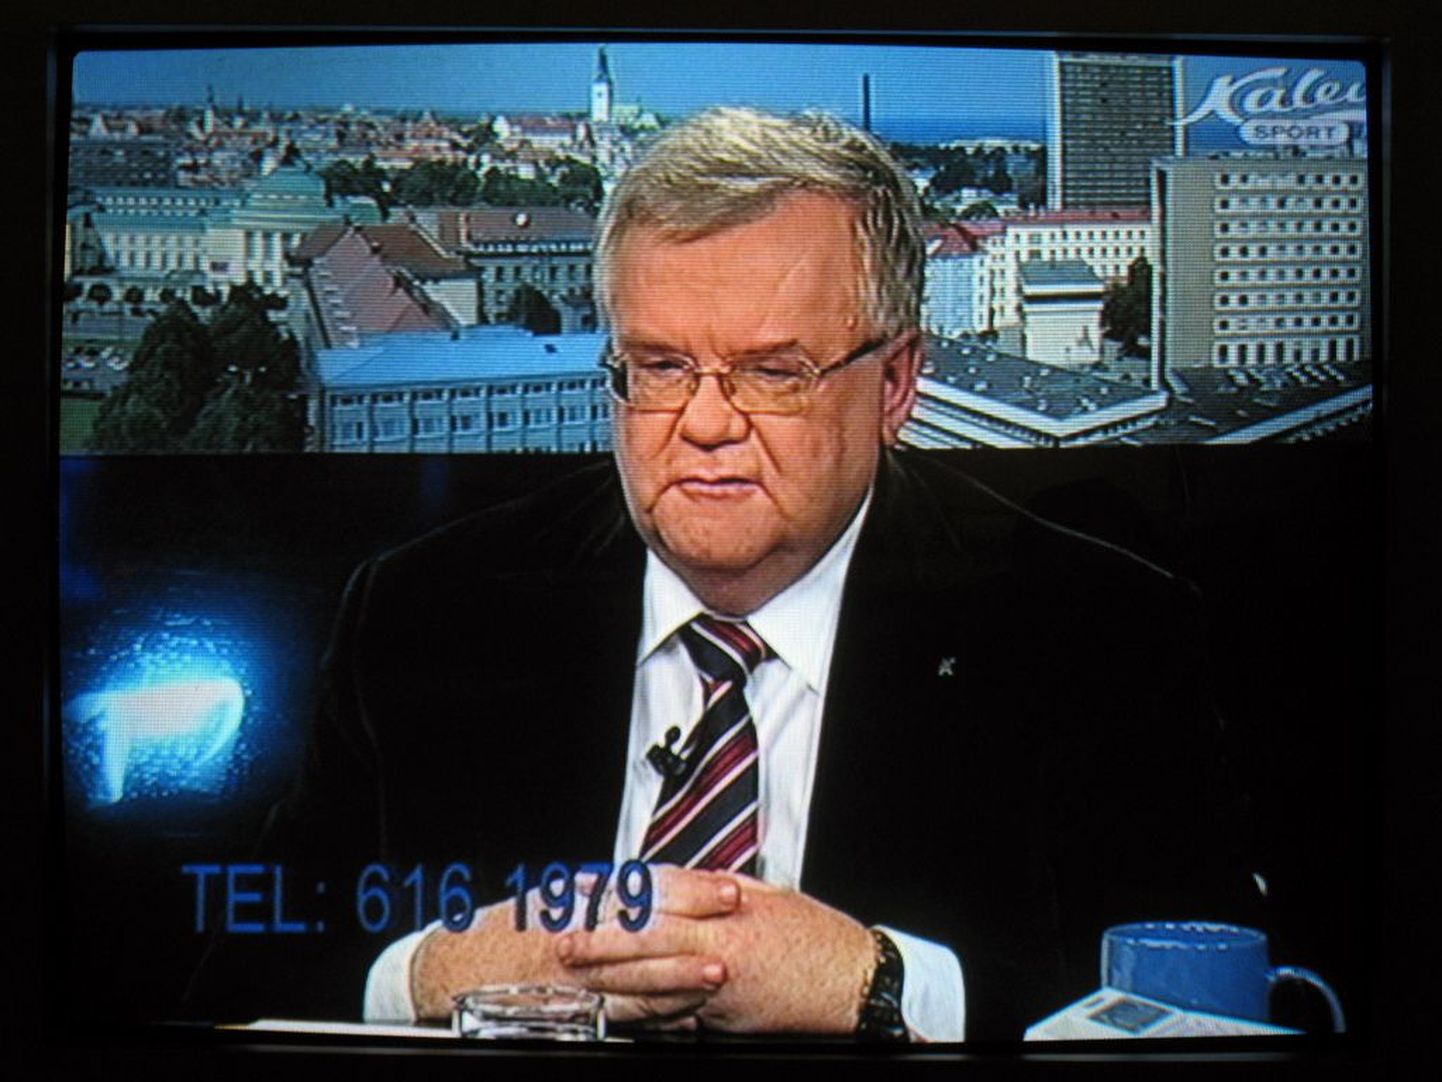 Telekanalil Kalev Sport näidatakse igakuiselt otsesaadet «Tele-Tallinn»